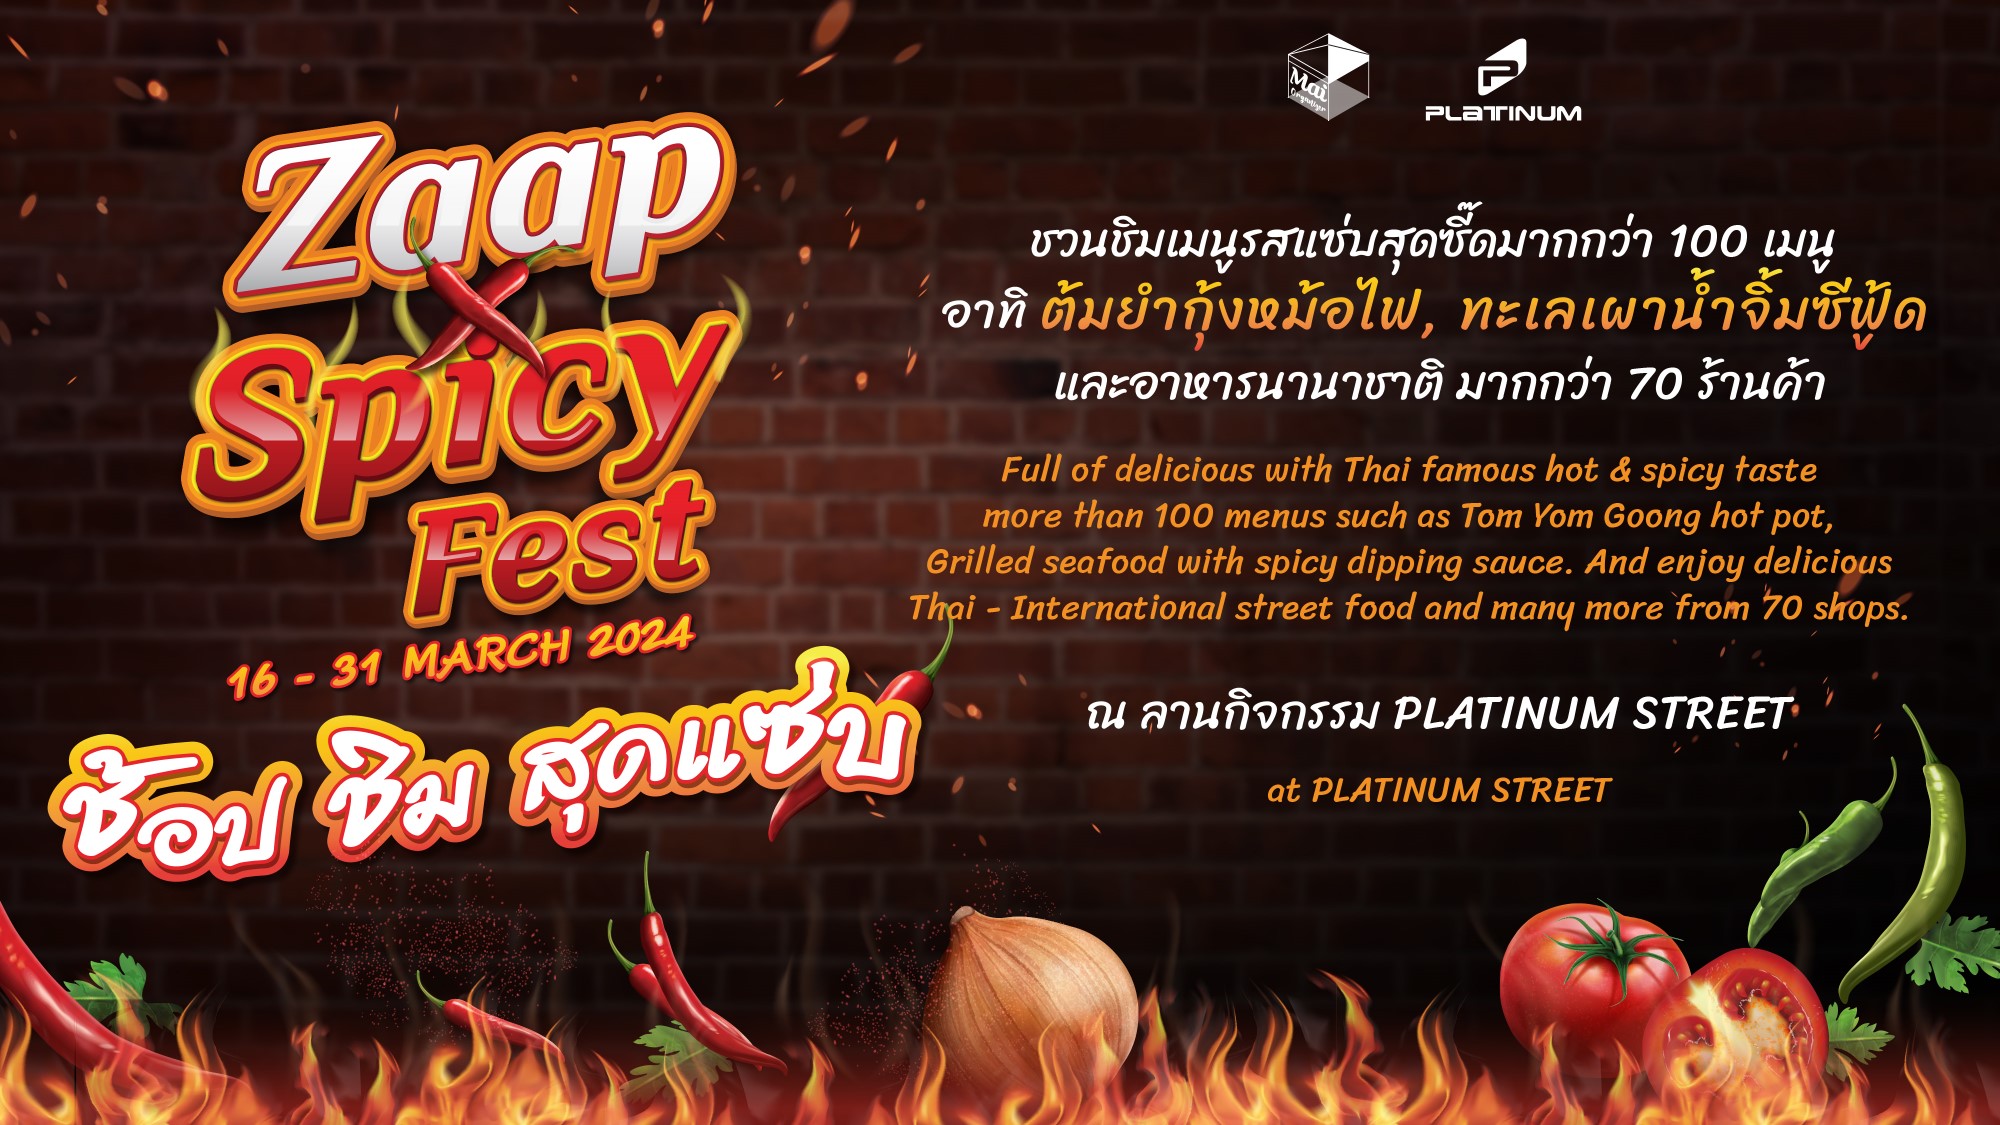 ศูนย์การค้าแพลทินัม ชวนช้อปชิม สุดแซ่บ ในงาน “ Zaap Spicy Fest ” 